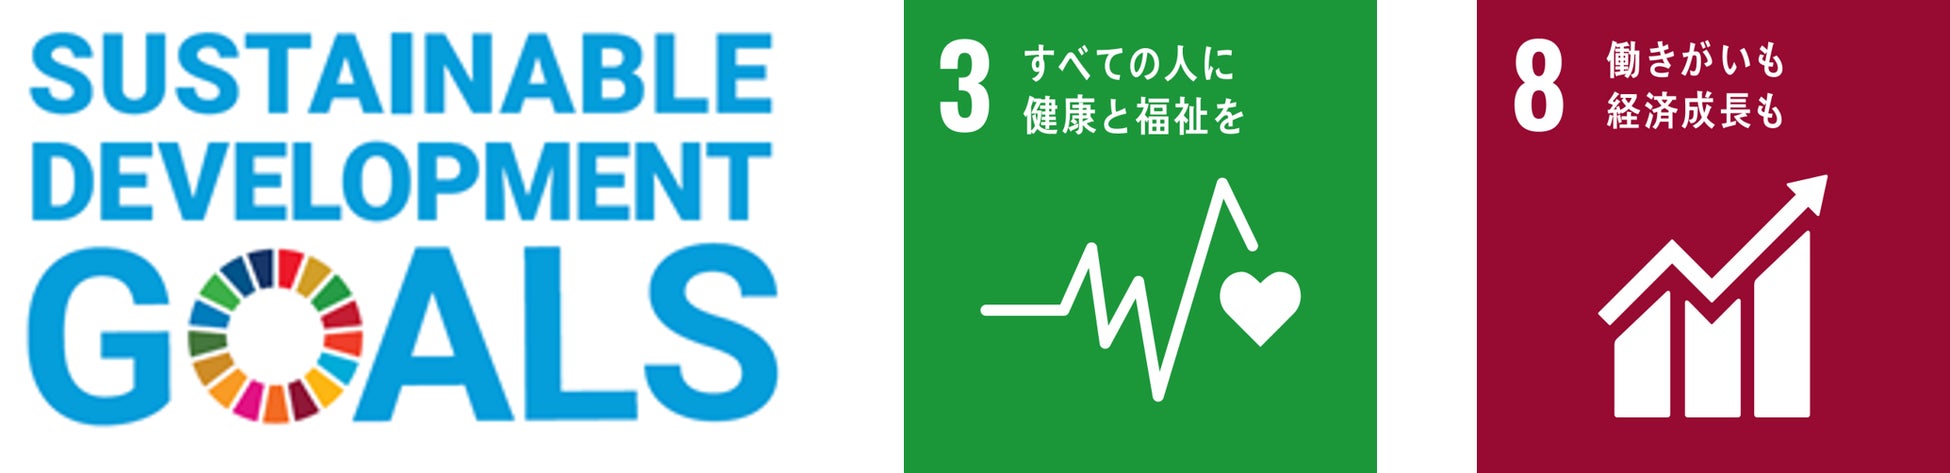 感染症対策効果No.1の光触媒型空気清浄機はAPSジャパンの光触媒除菌脱臭機「arc」